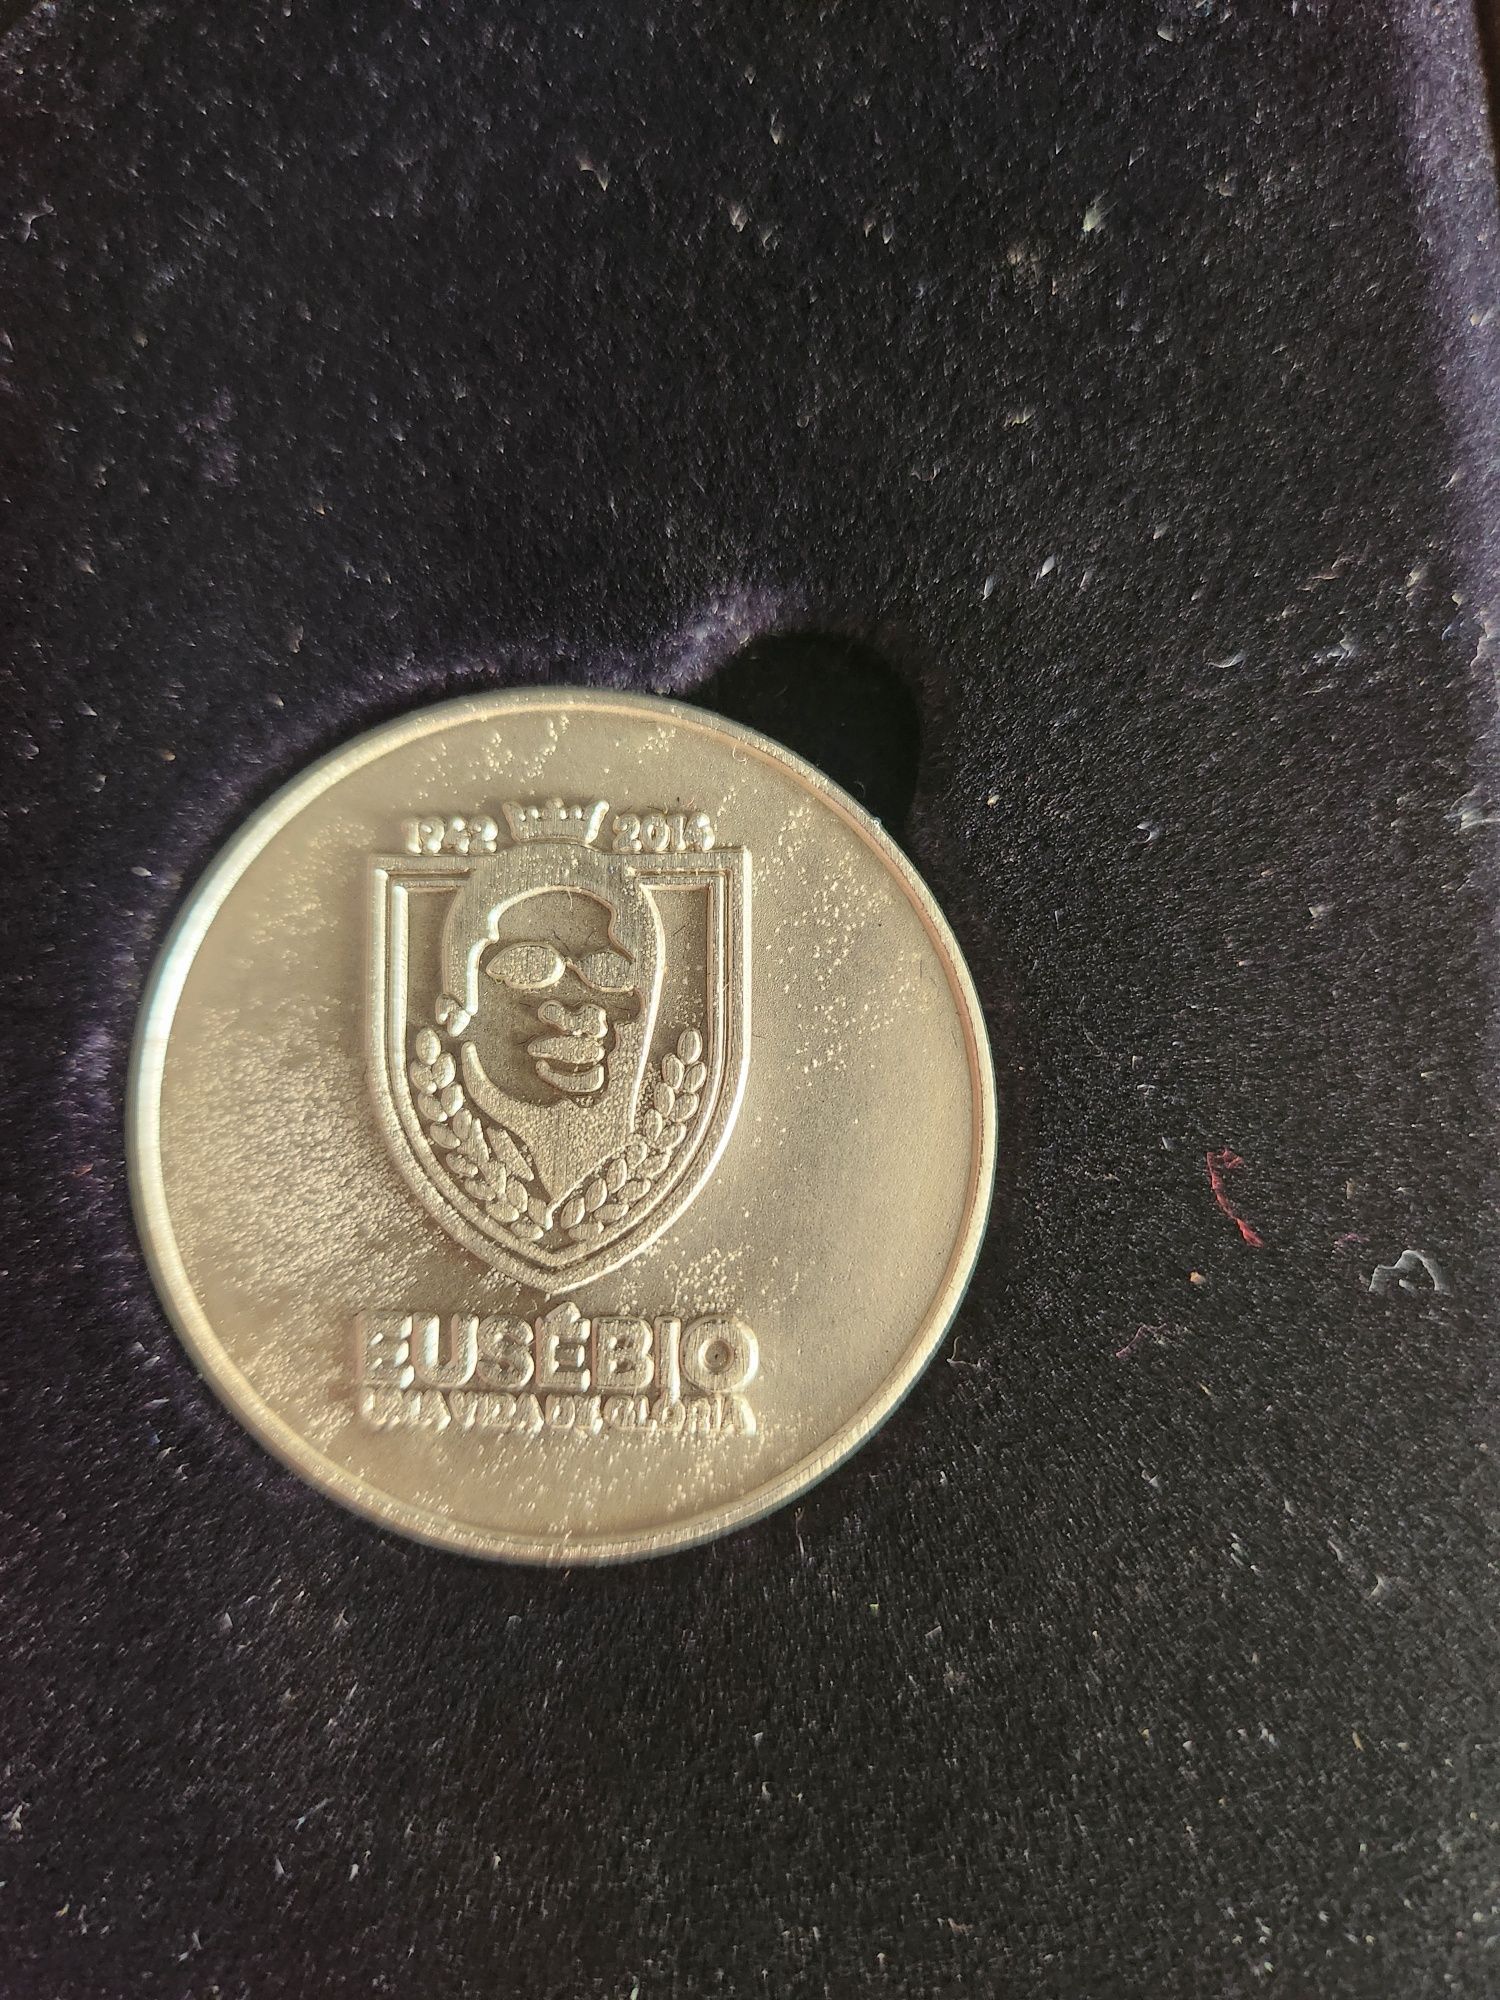 Medalha comemorativa em prata Eusébio